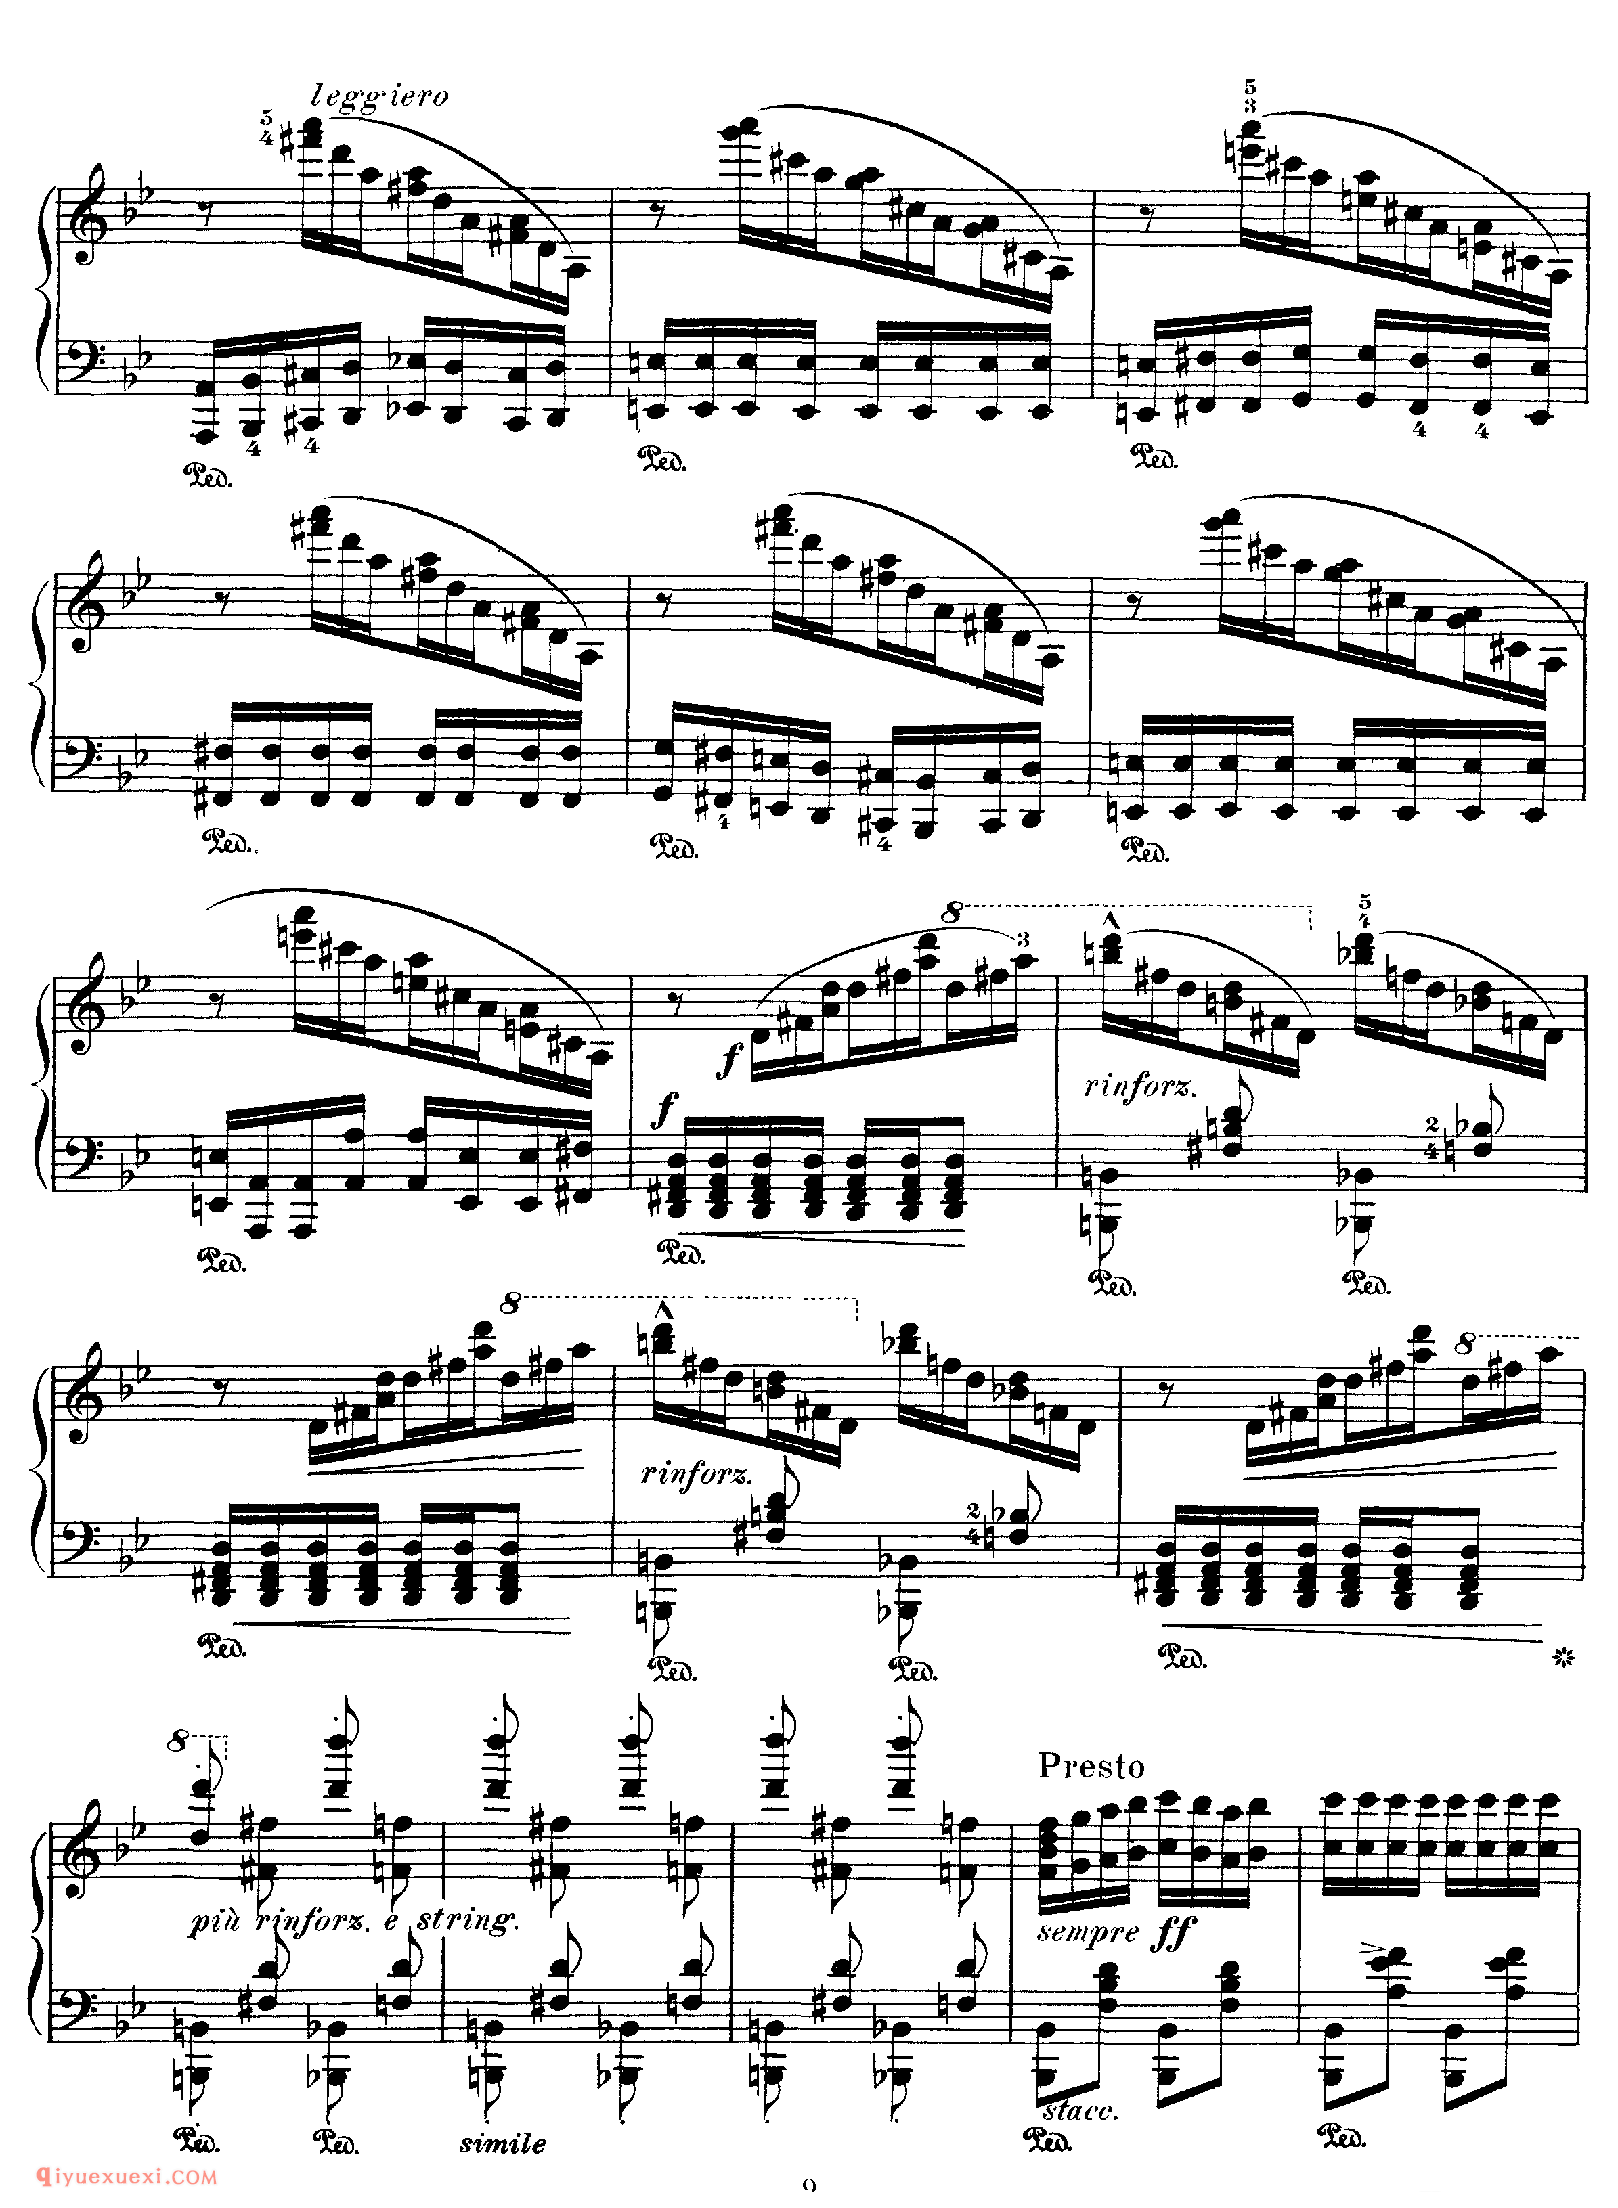 李斯特匈牙利狂想曲第6号_Hungarian Rhapsody No 6 in Db_李斯特钢琴乐谱